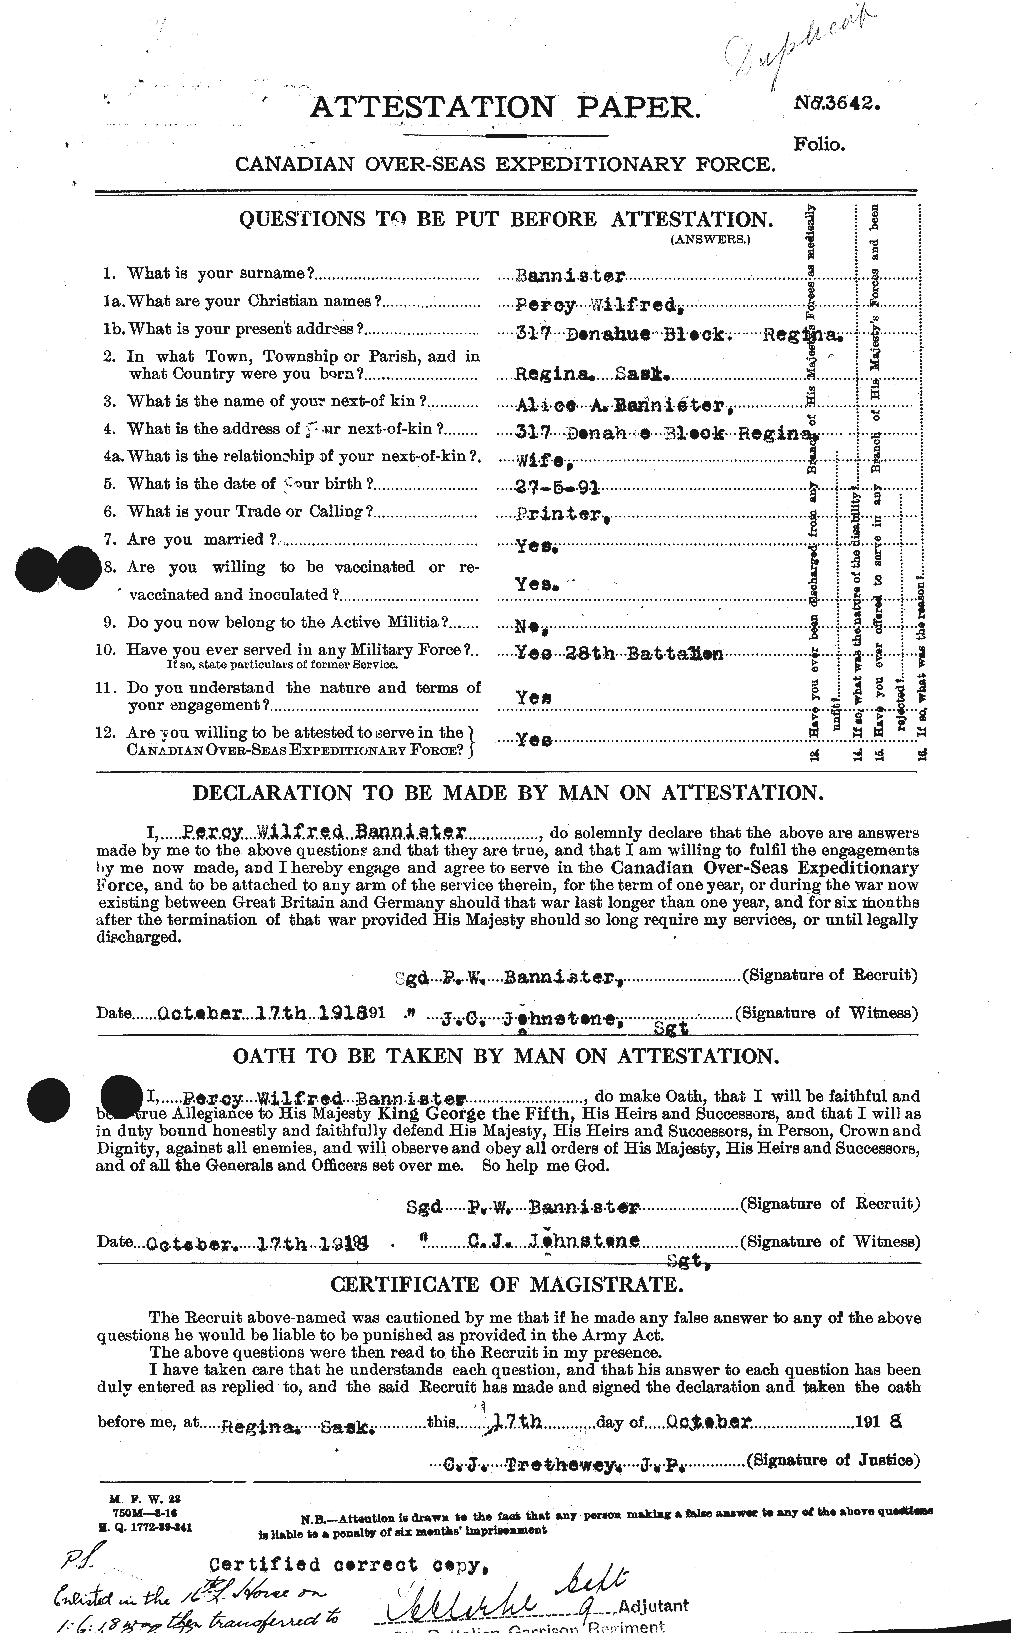 Dossiers du Personnel de la Première Guerre mondiale - CEC 224773a